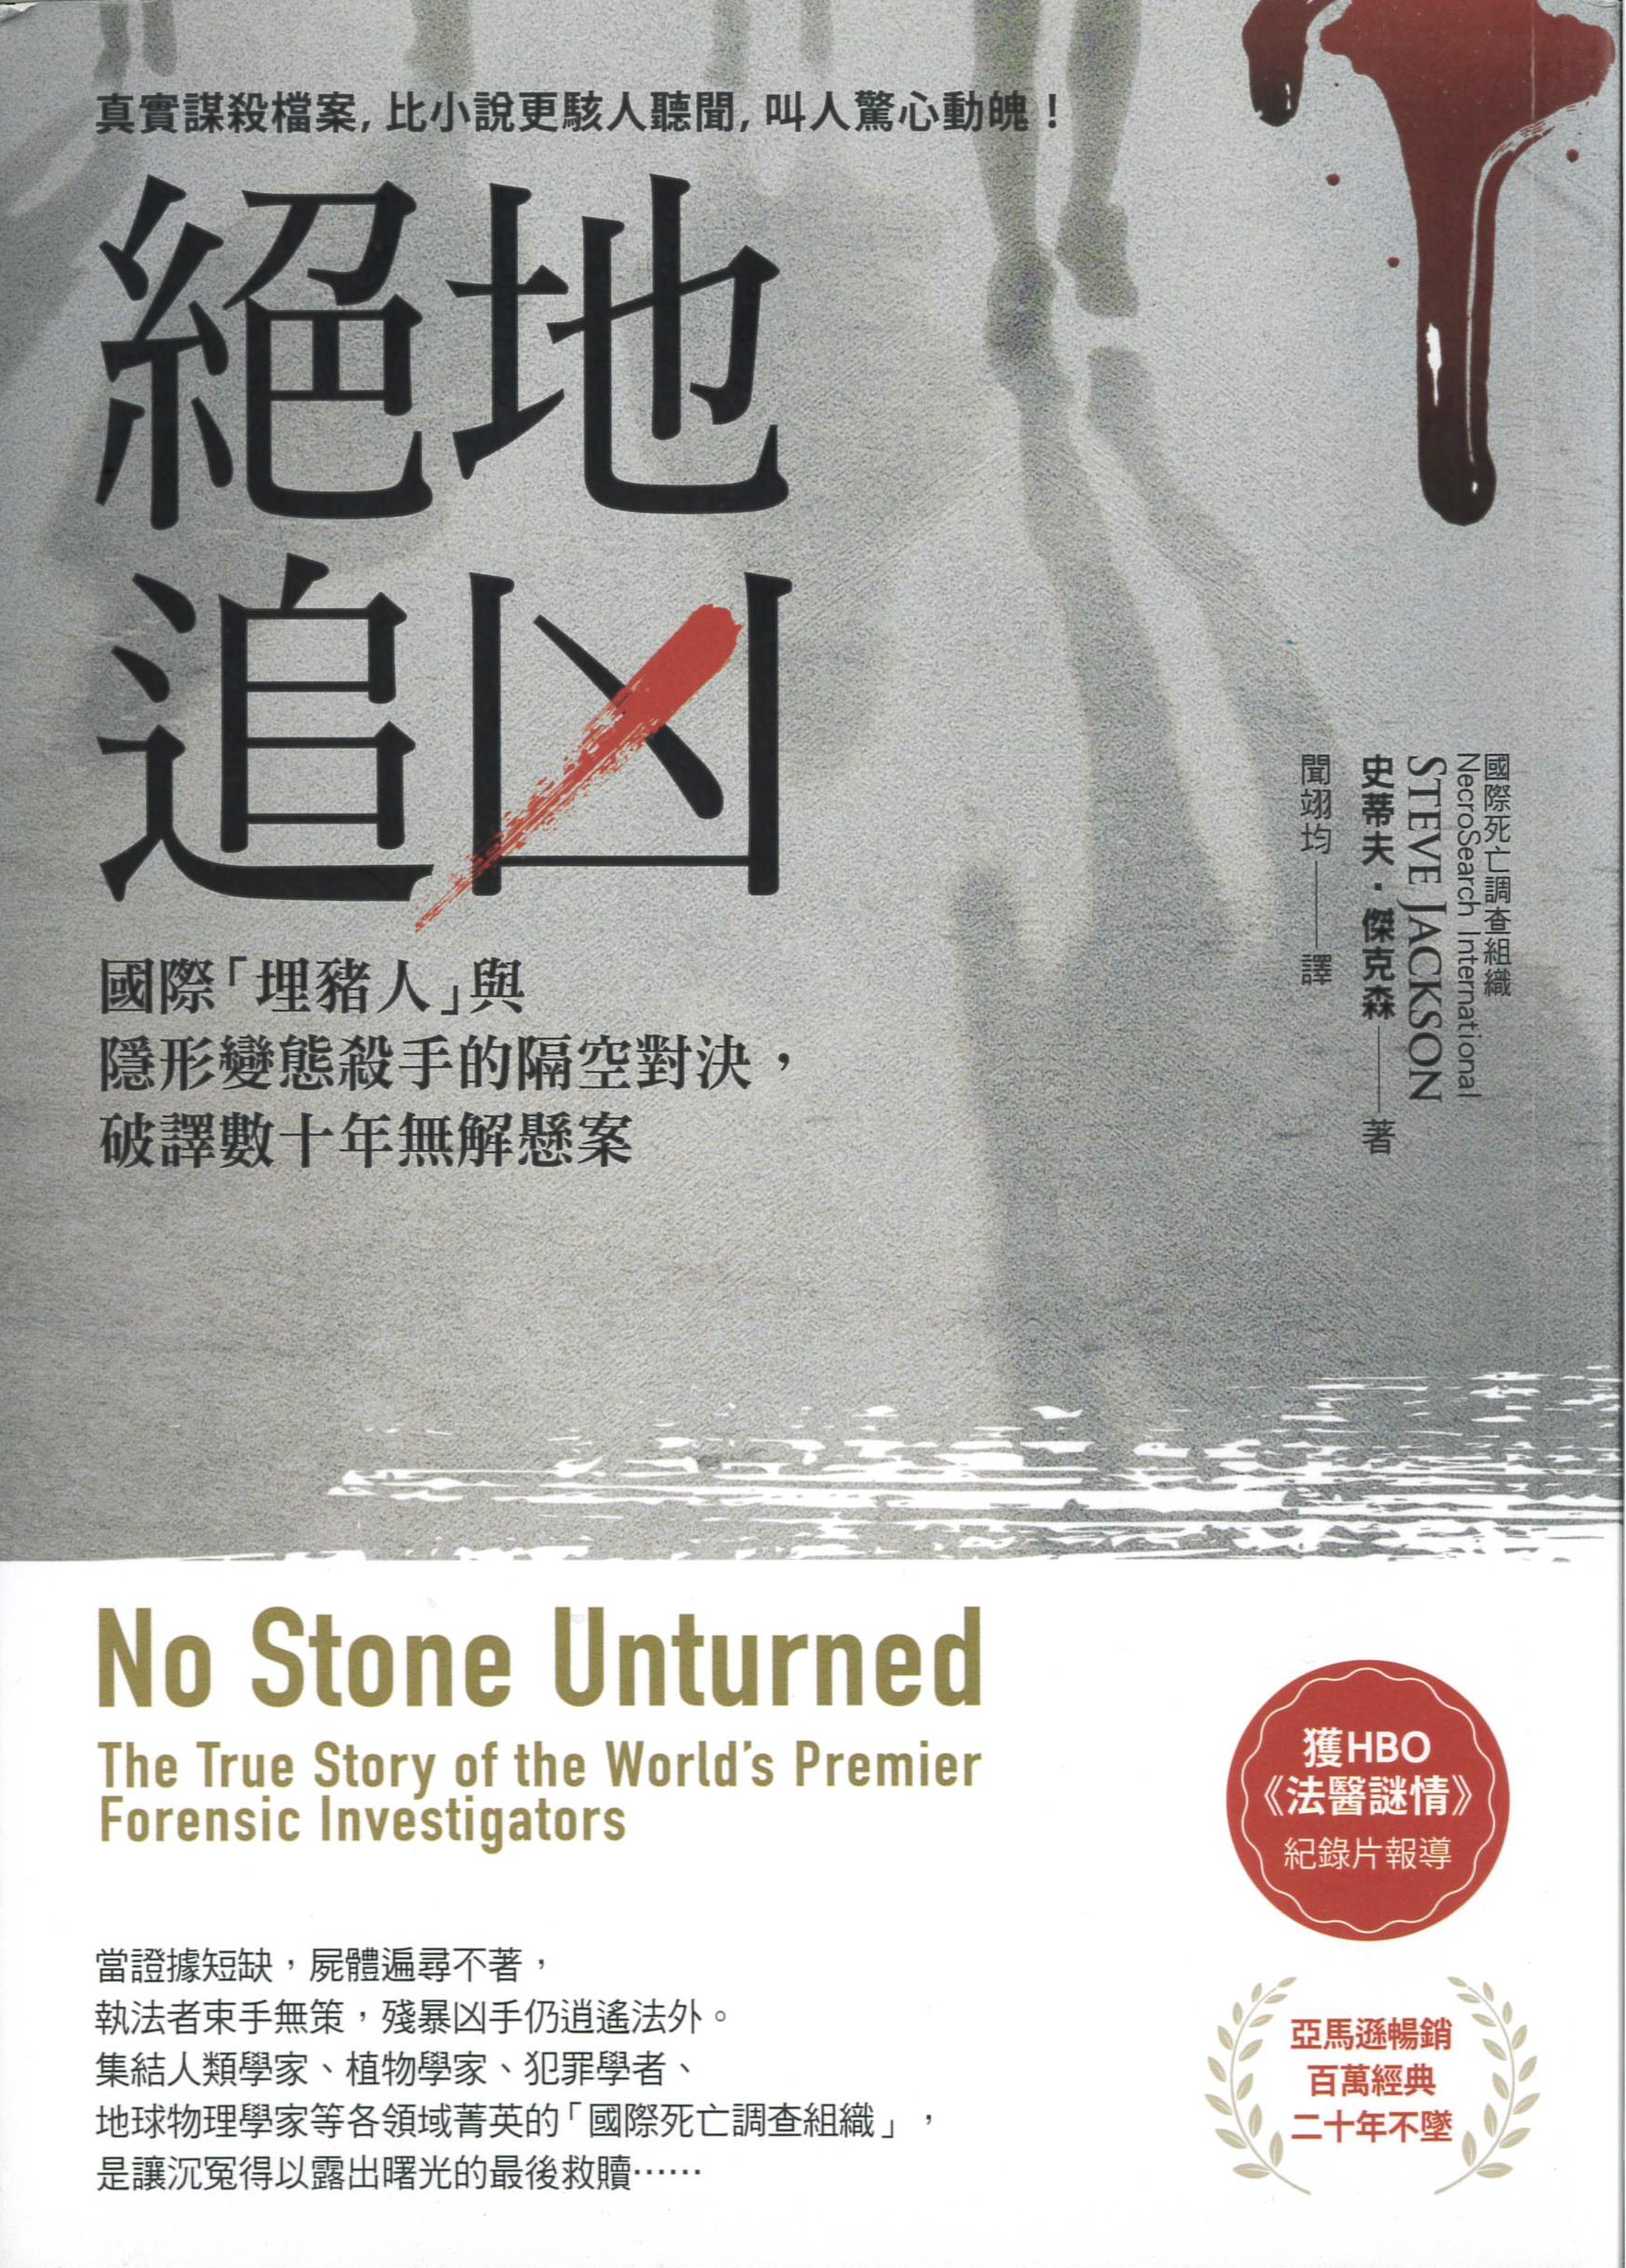 絕地追凶 : 國際「埋豬人」與隱形變態殺手的隔空對決,破譯數十年無解懸案 = No stone unturned : the true story of the world